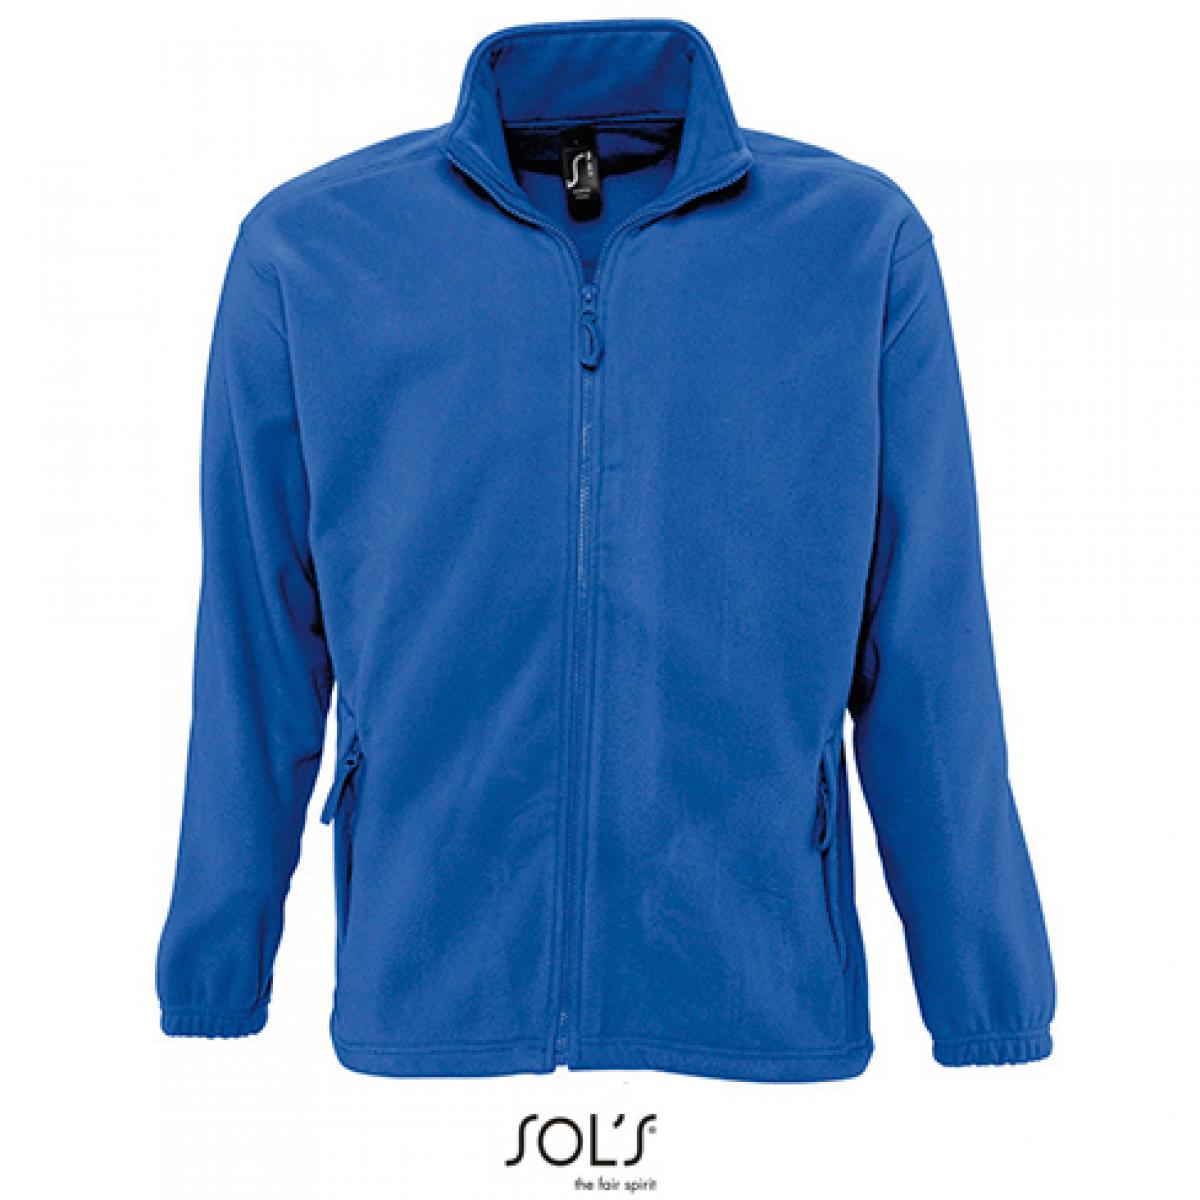 Hersteller: SOLs Herstellernummer: 55000 Artikelbezeichnung: Fleecejacket North / Herren Jacke bis 5XL Farbe: Royal Blue